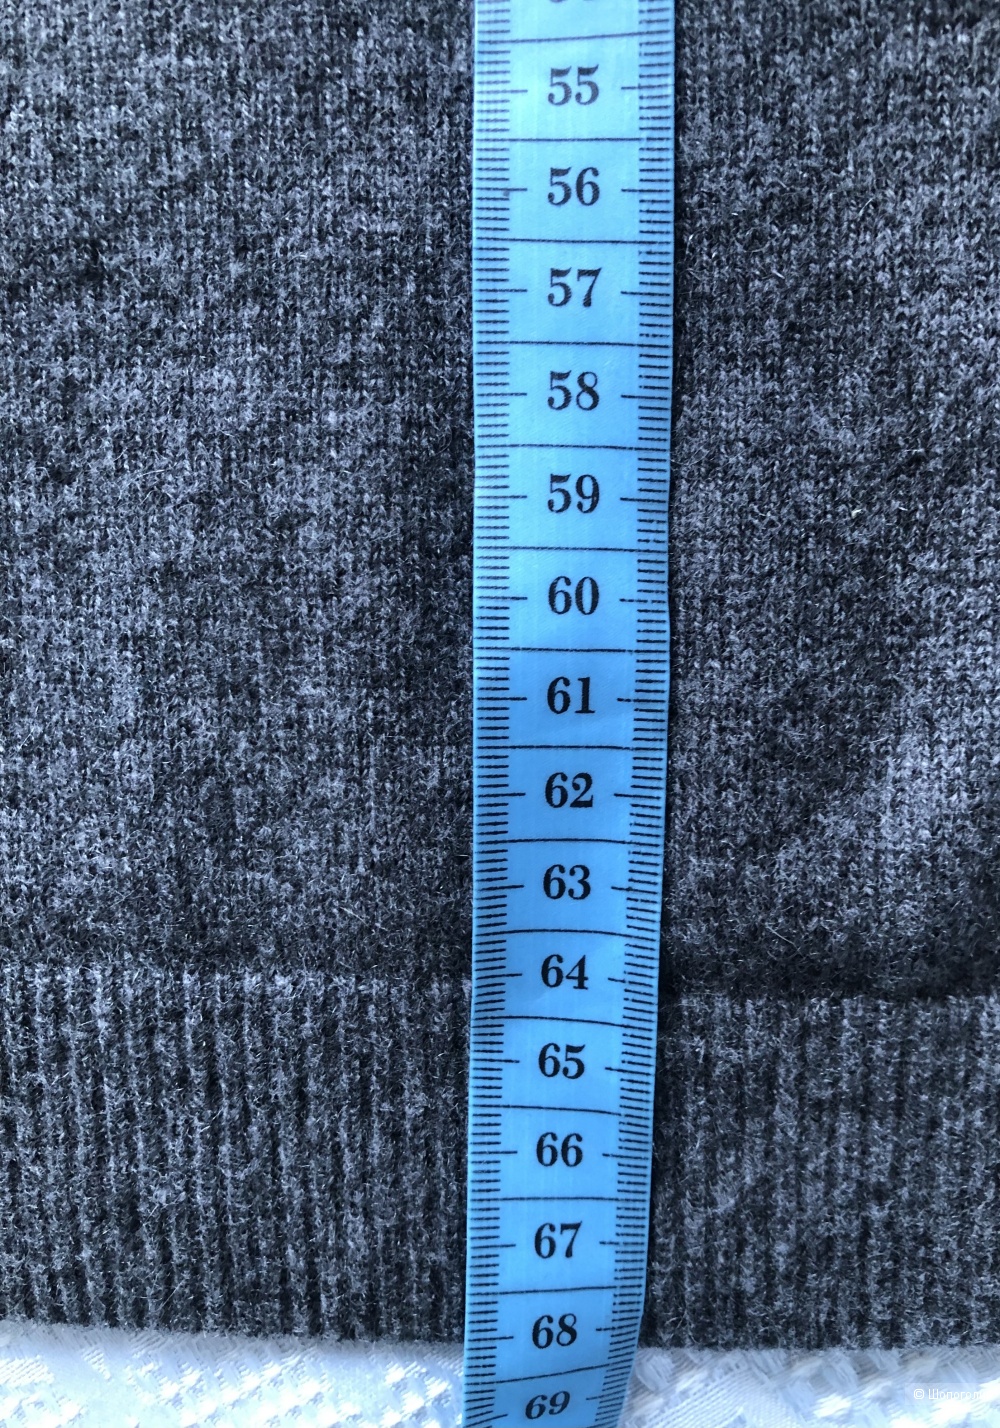 Кашемировый пуловер Christian Berg размер 46 ( на 50-52 российский )